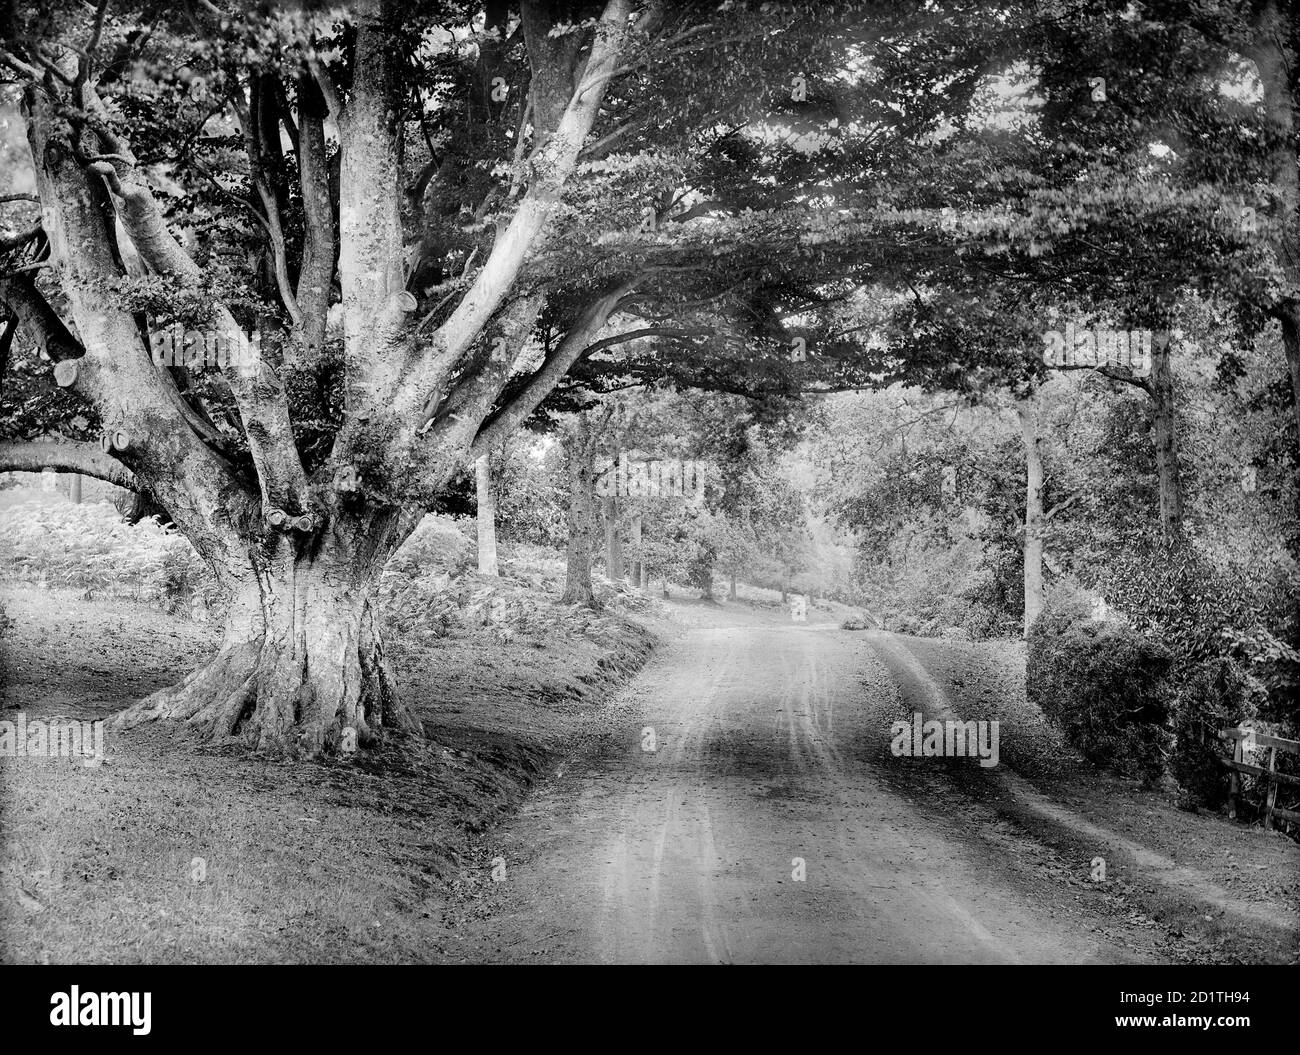 HIGHCLERE CASTLE, Hampshire. Blick auf eine Straße, die durch den Park führt, mit einer großen Eiche im Vordergrund. Fotografiert von Henry Taunt (aktiv 1860 - 1922). Stockfoto